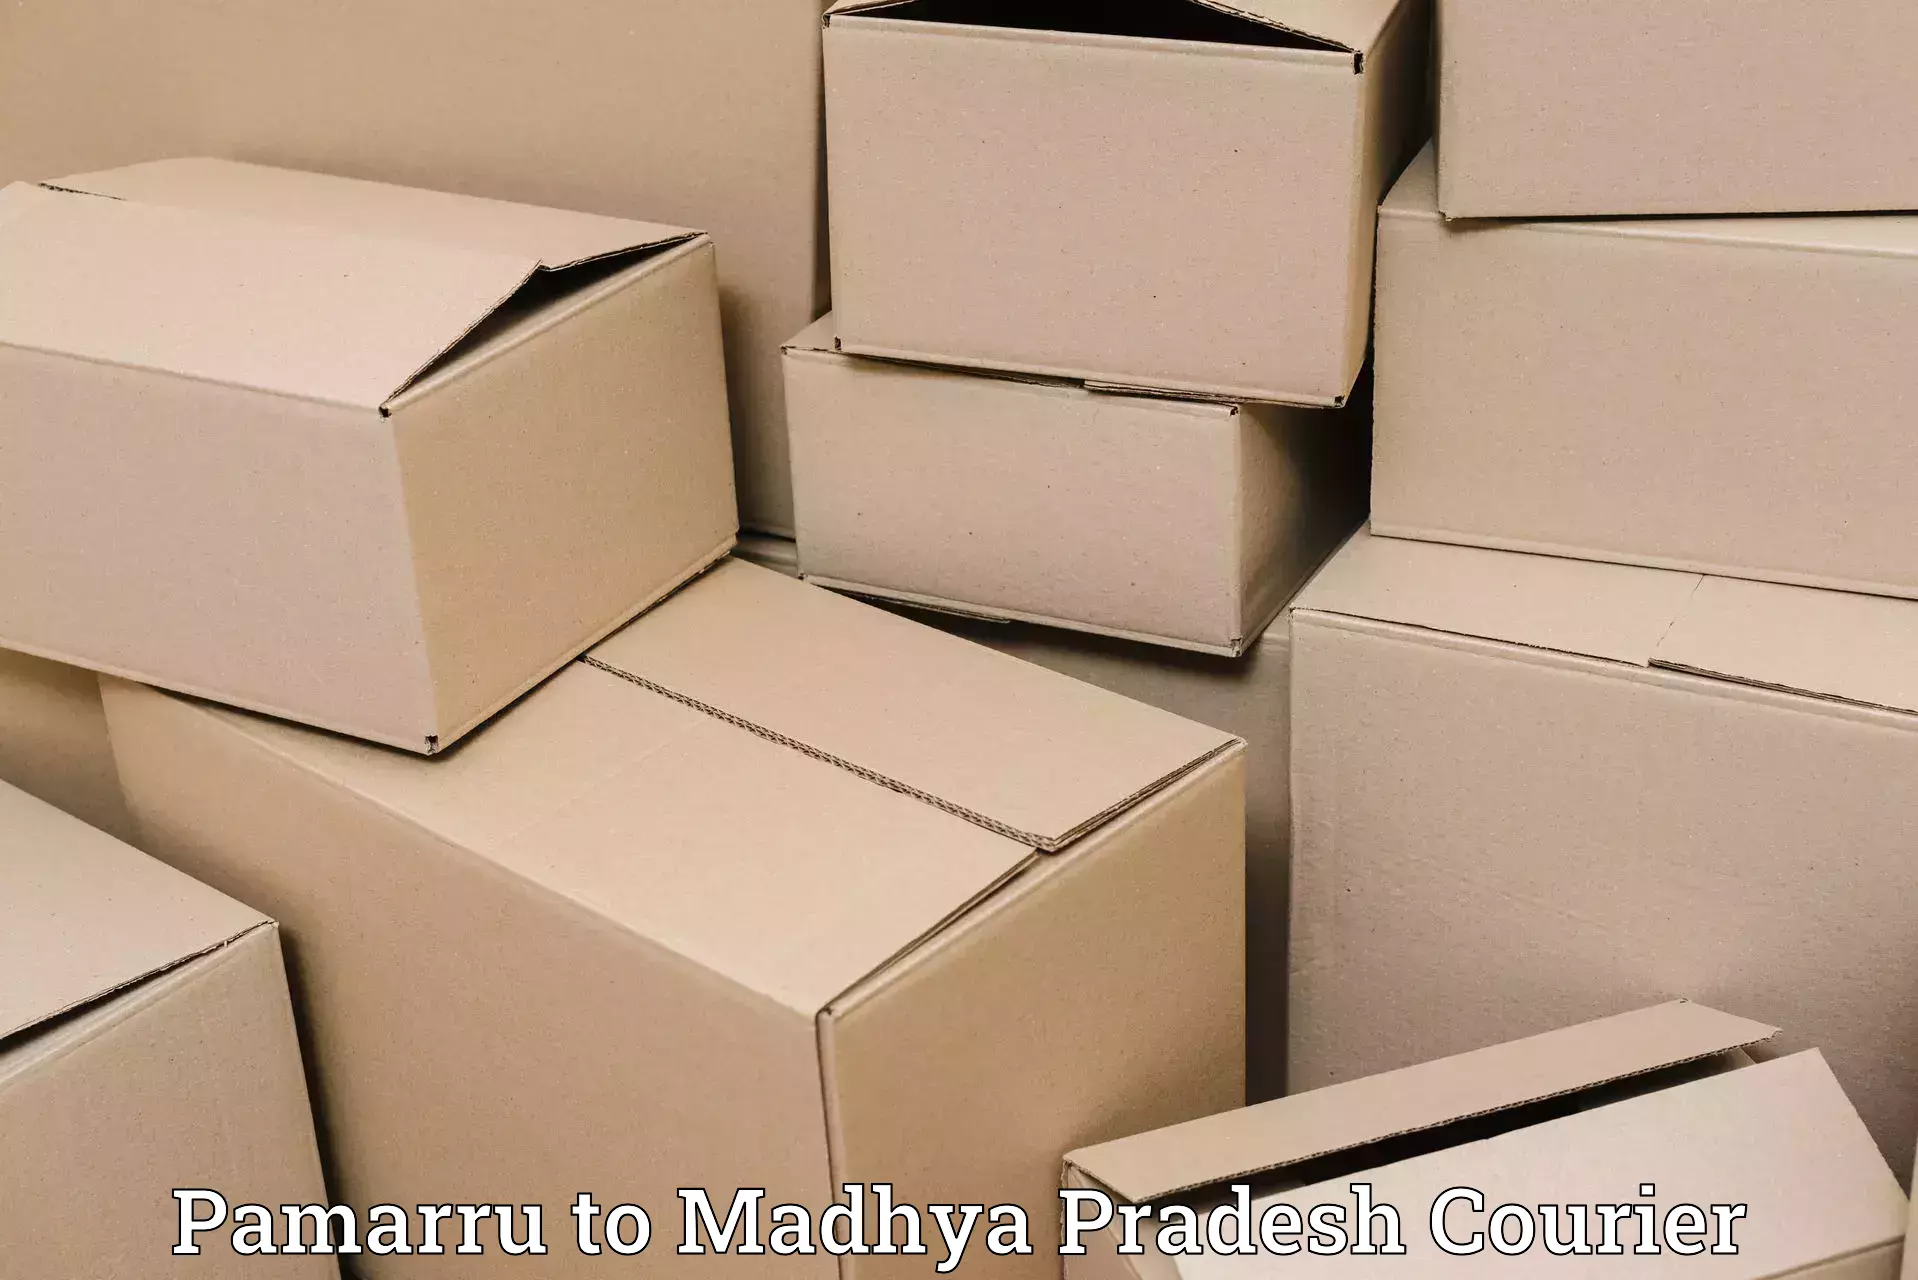 Ocean freight courier Pamarru to Nalkheda